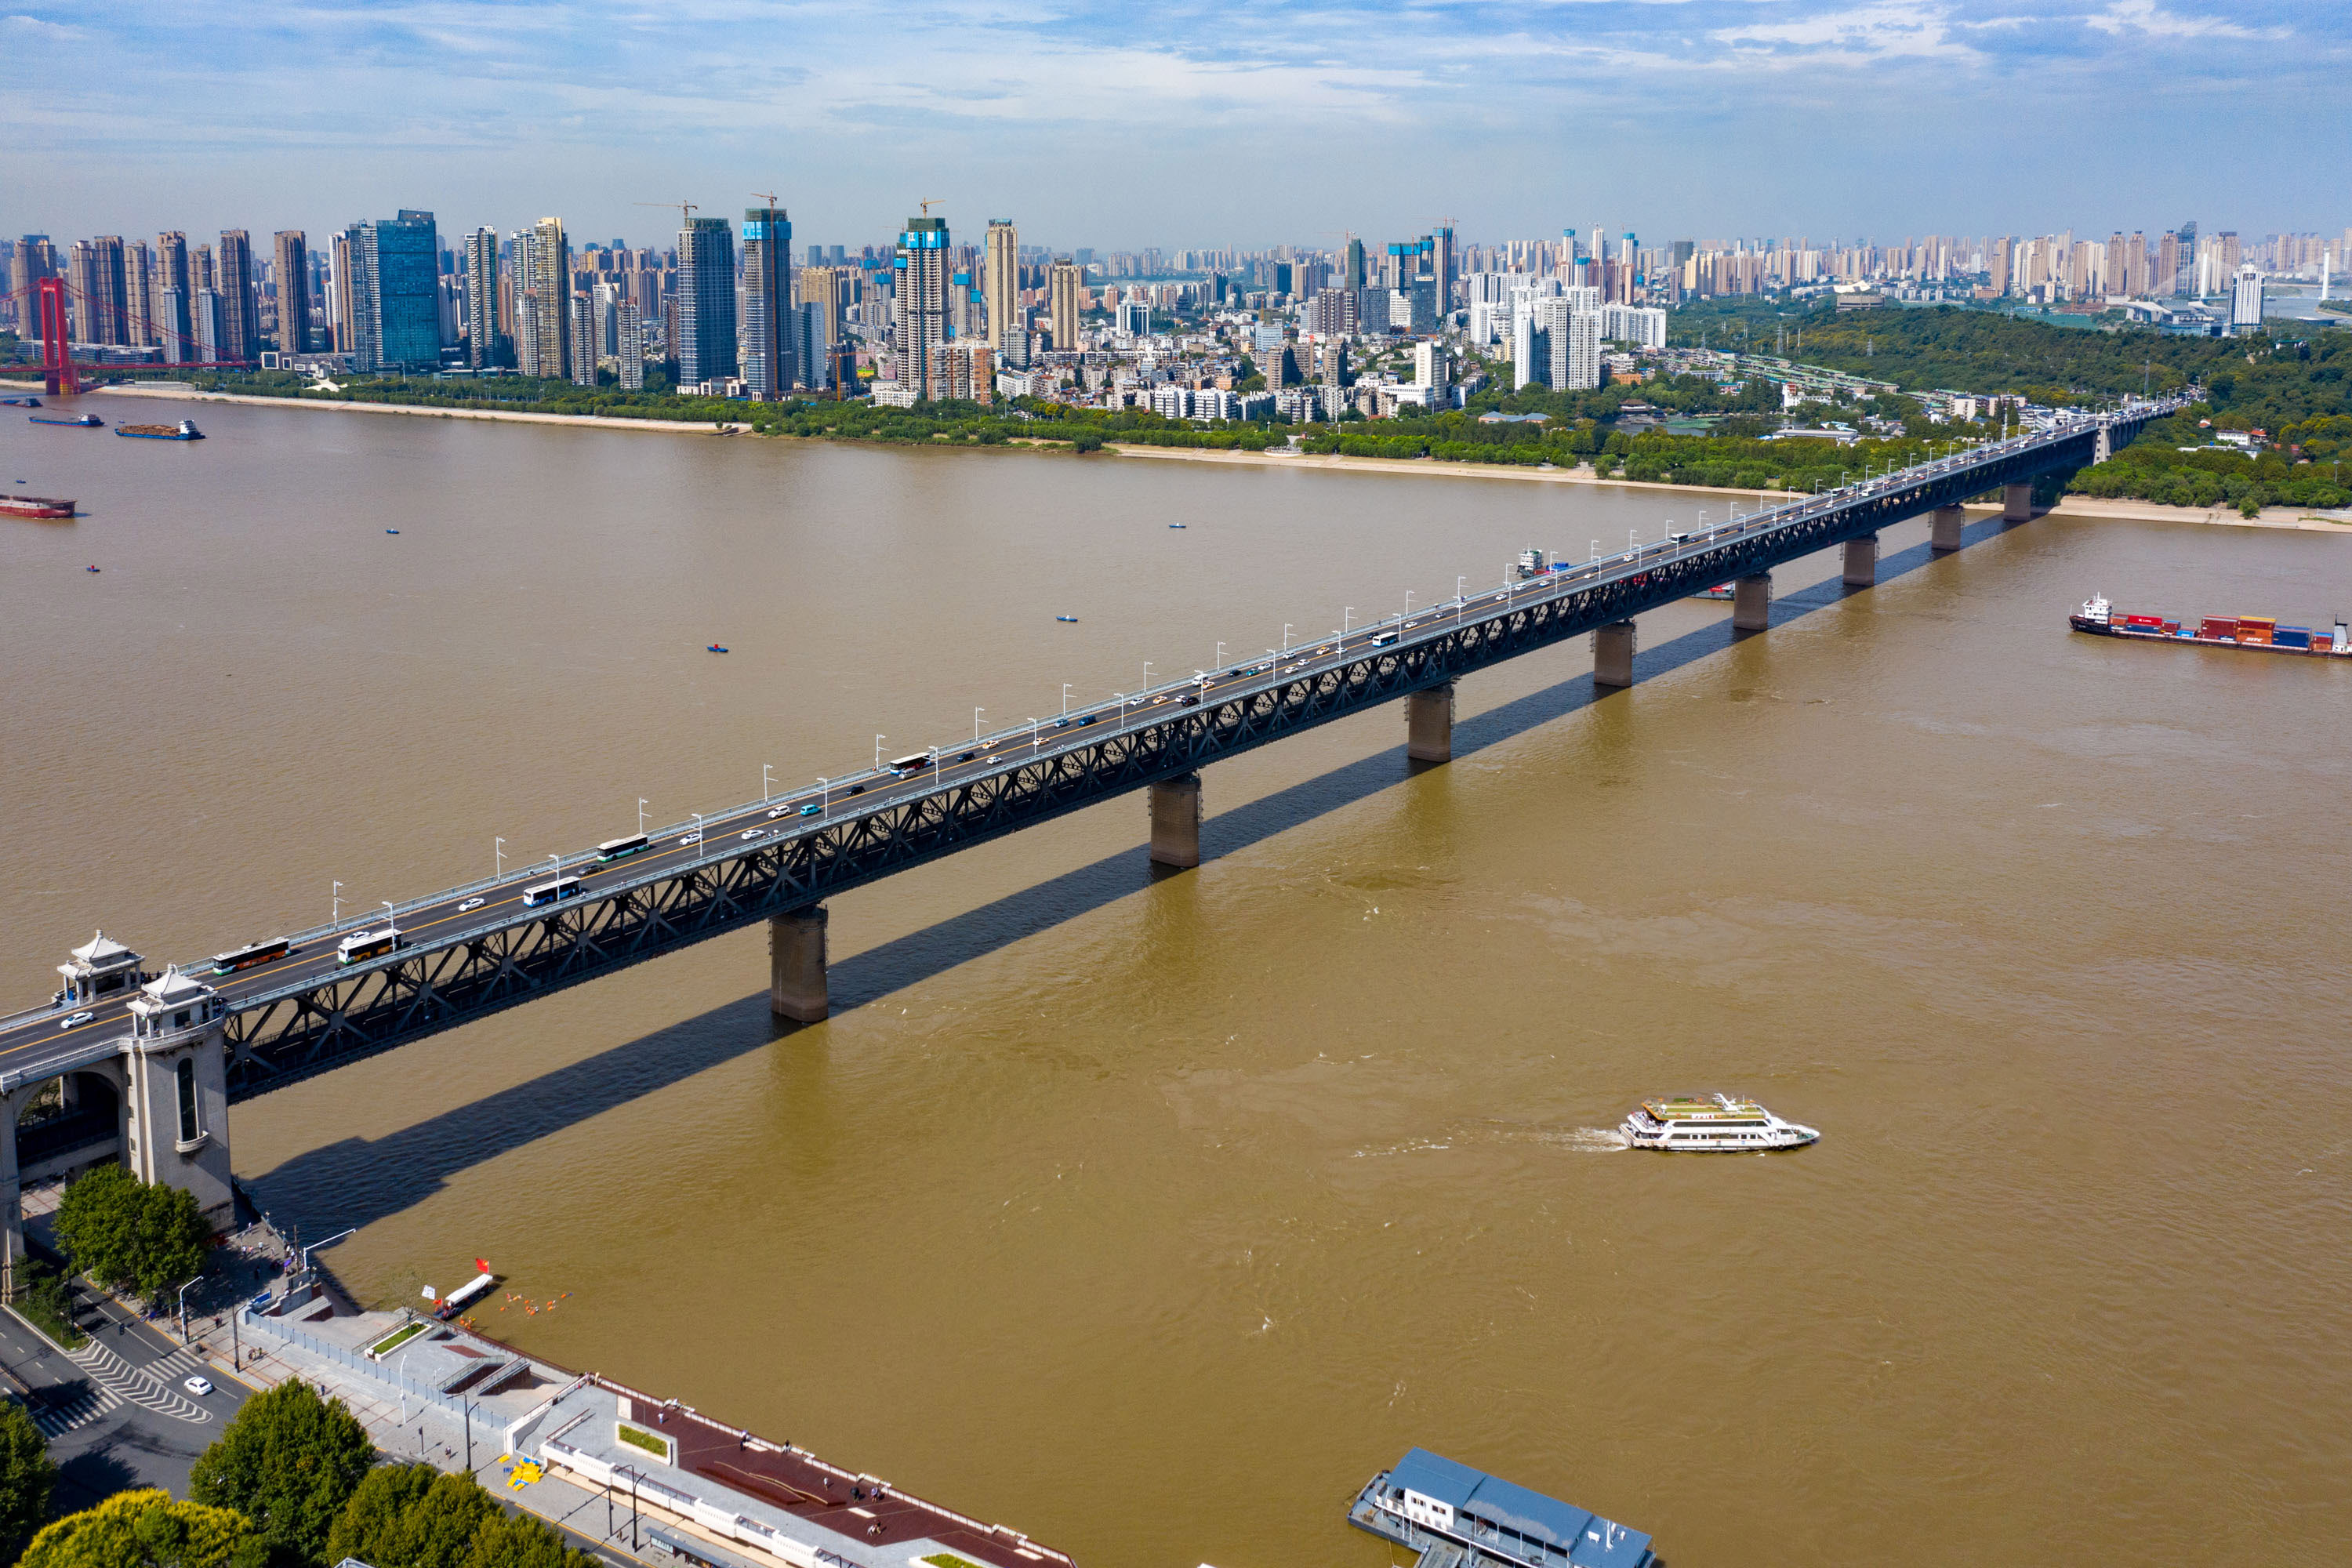 它大桥依然不垮,安若泰山,这座桥就是位于湖北武汉市的武汉长江大桥